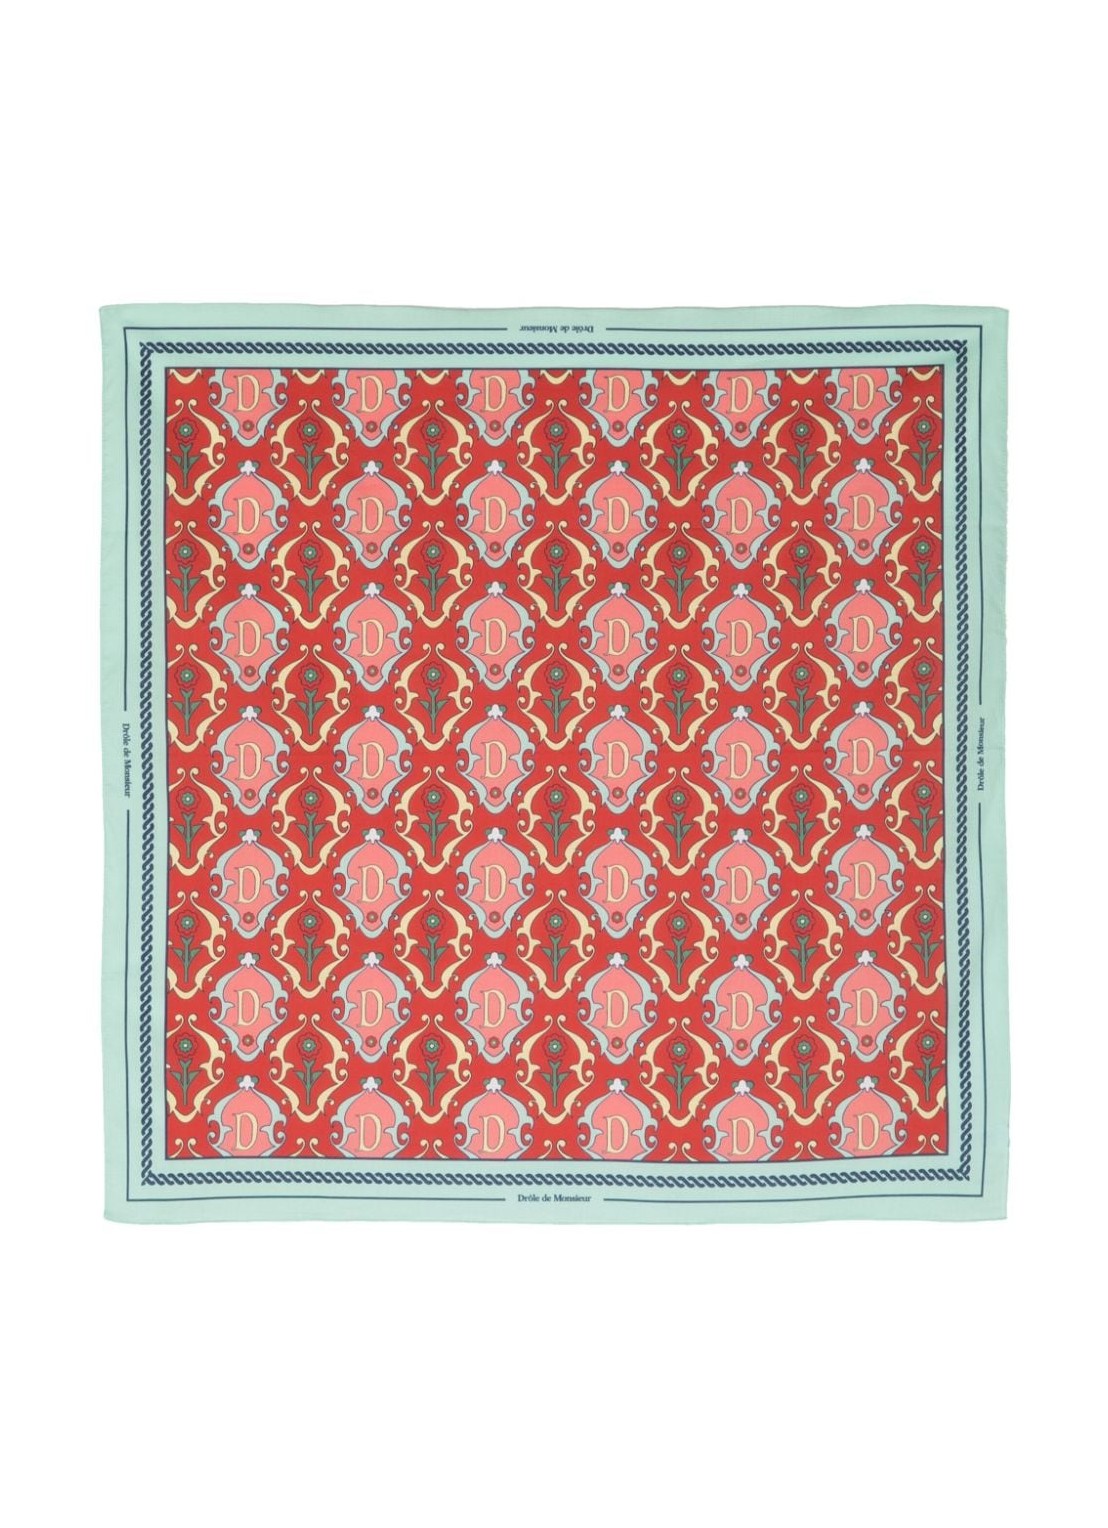 Neckwear drole de monsieur neckwear manle foulard ornements - dba002co128rd red talla rojo
 